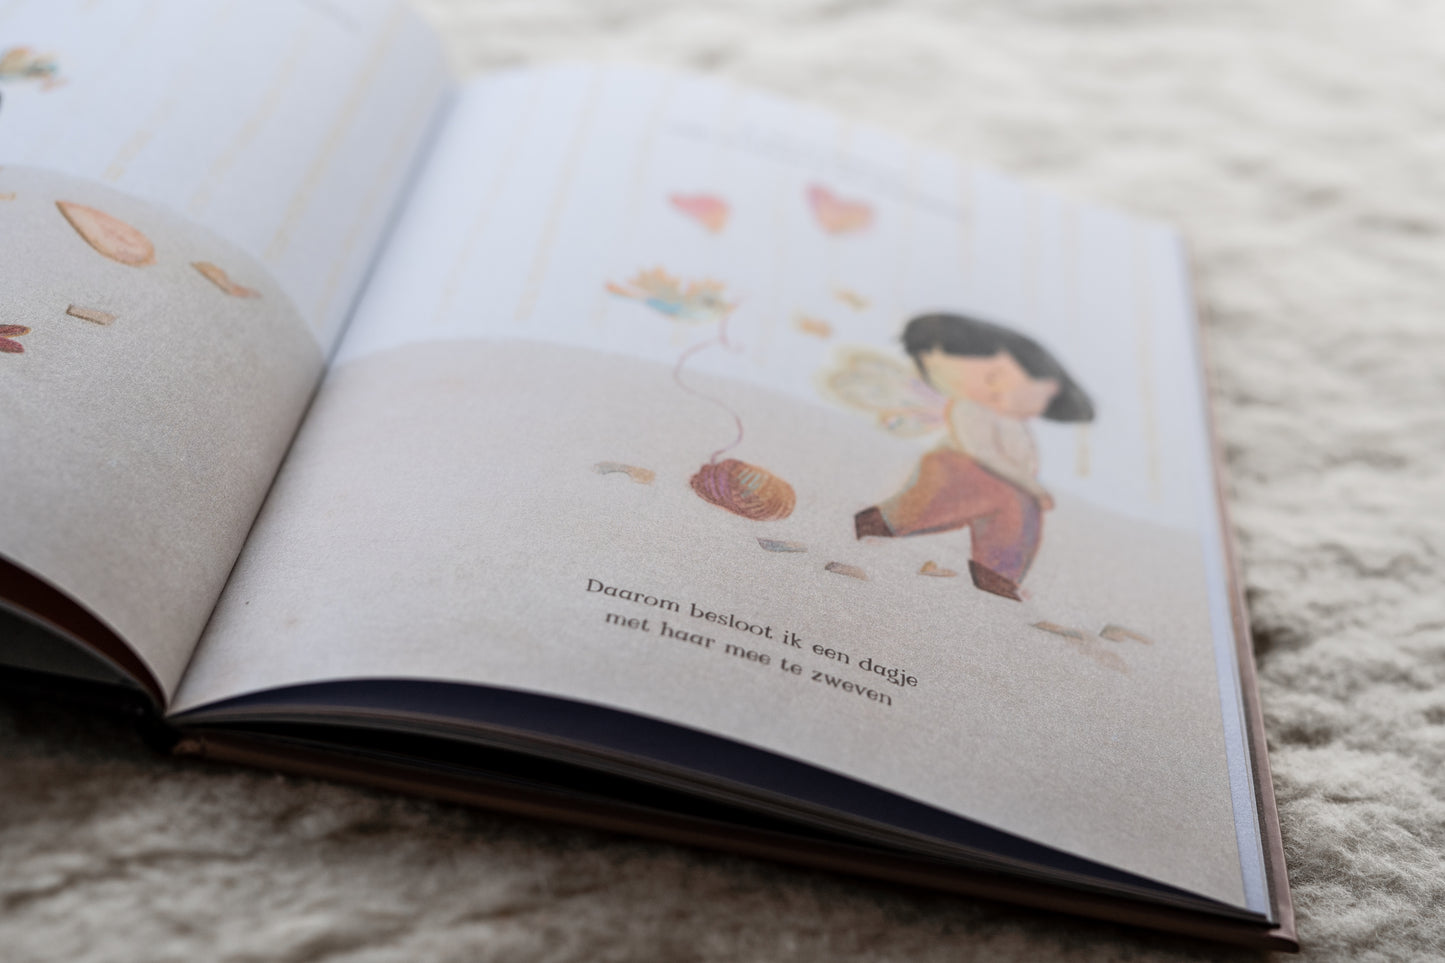 Boekenbundel - Moedergodin en Kinderboek